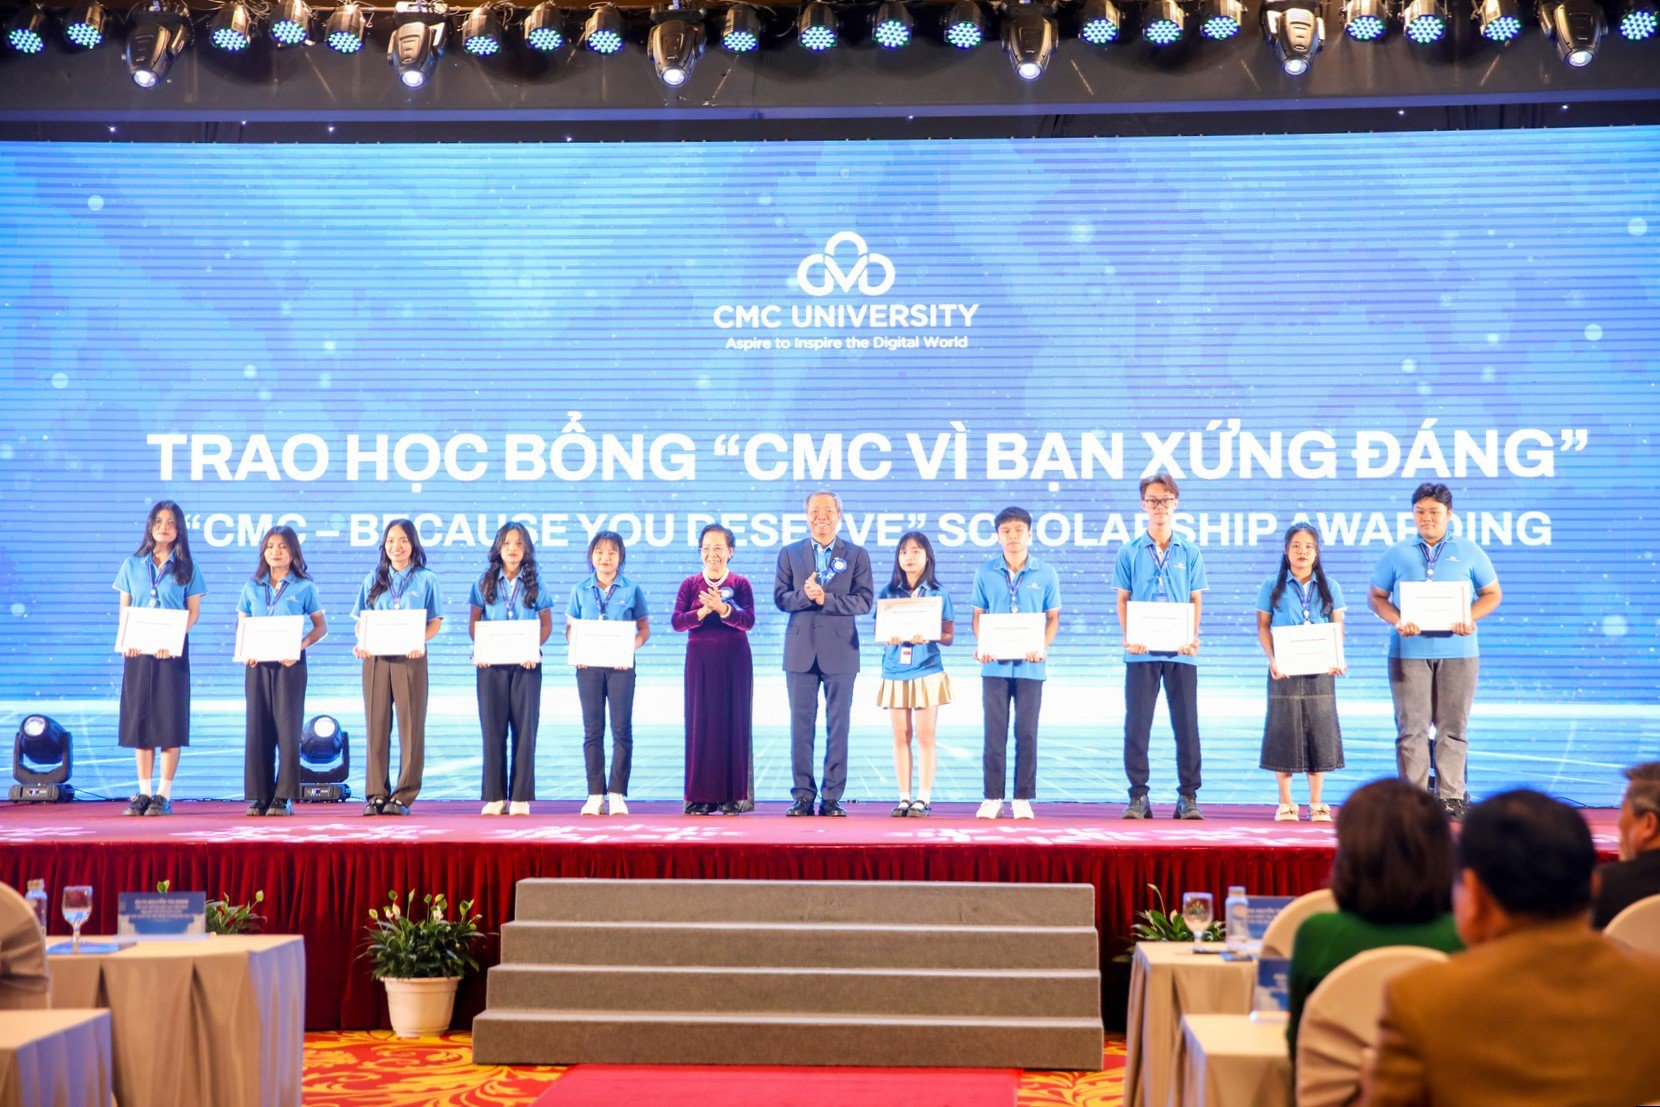 Nguyên Phó Chủ tịch nước Nguyễn Thị Doan và ông Nguyễn Trung Chính - Chủ tịch Tập đoàn CMC trao học bổng “CMC - Vì bạn xứng đáng” năm 2023 (Ảnh: CMC).